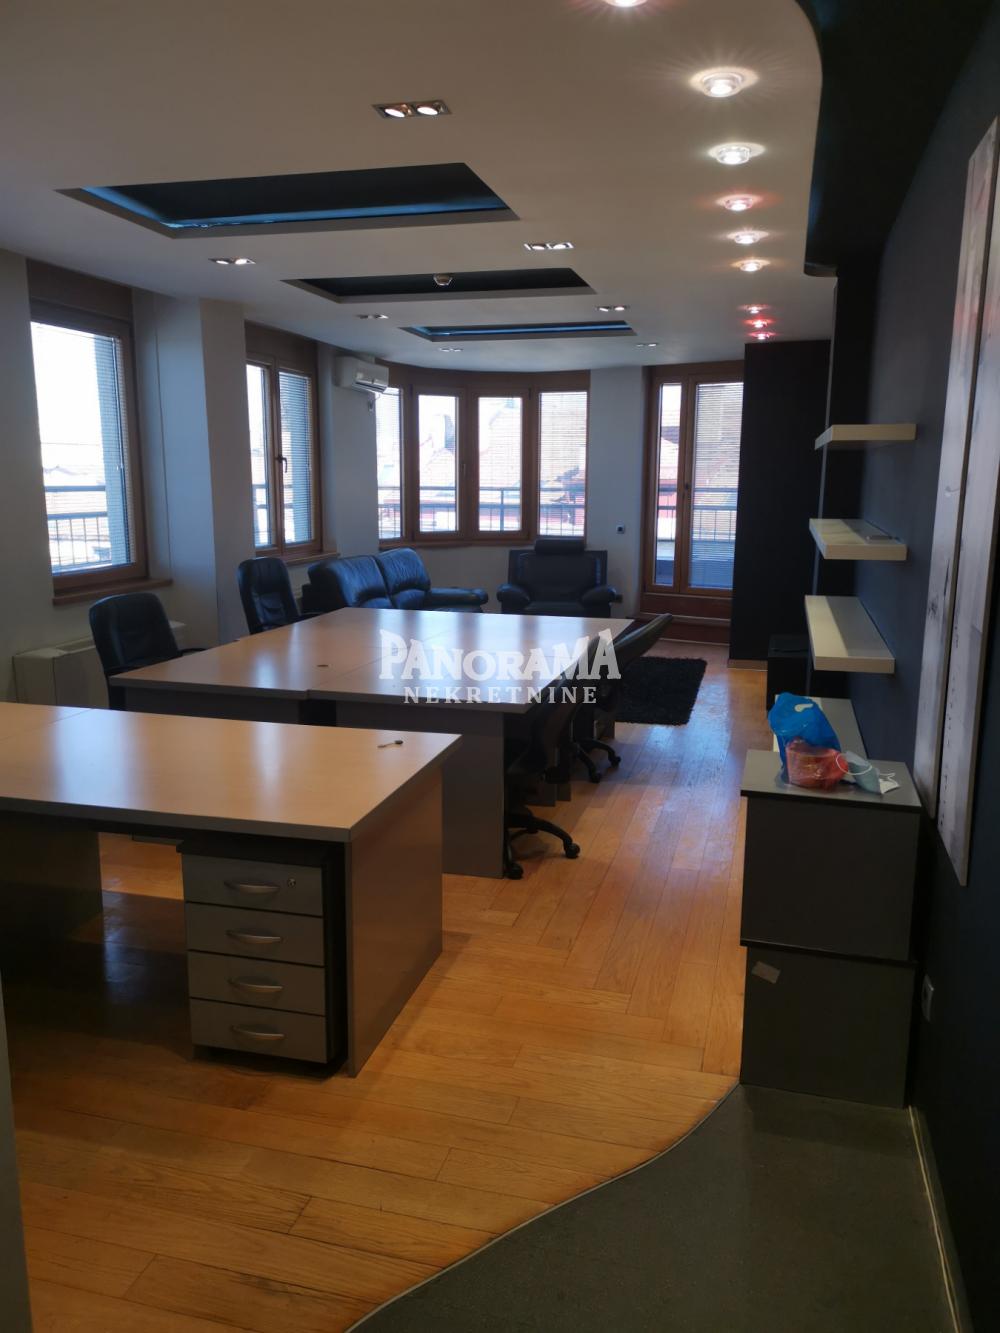 Poslovno kancelarijski prostor,2.0,70m2,lux ID#3005